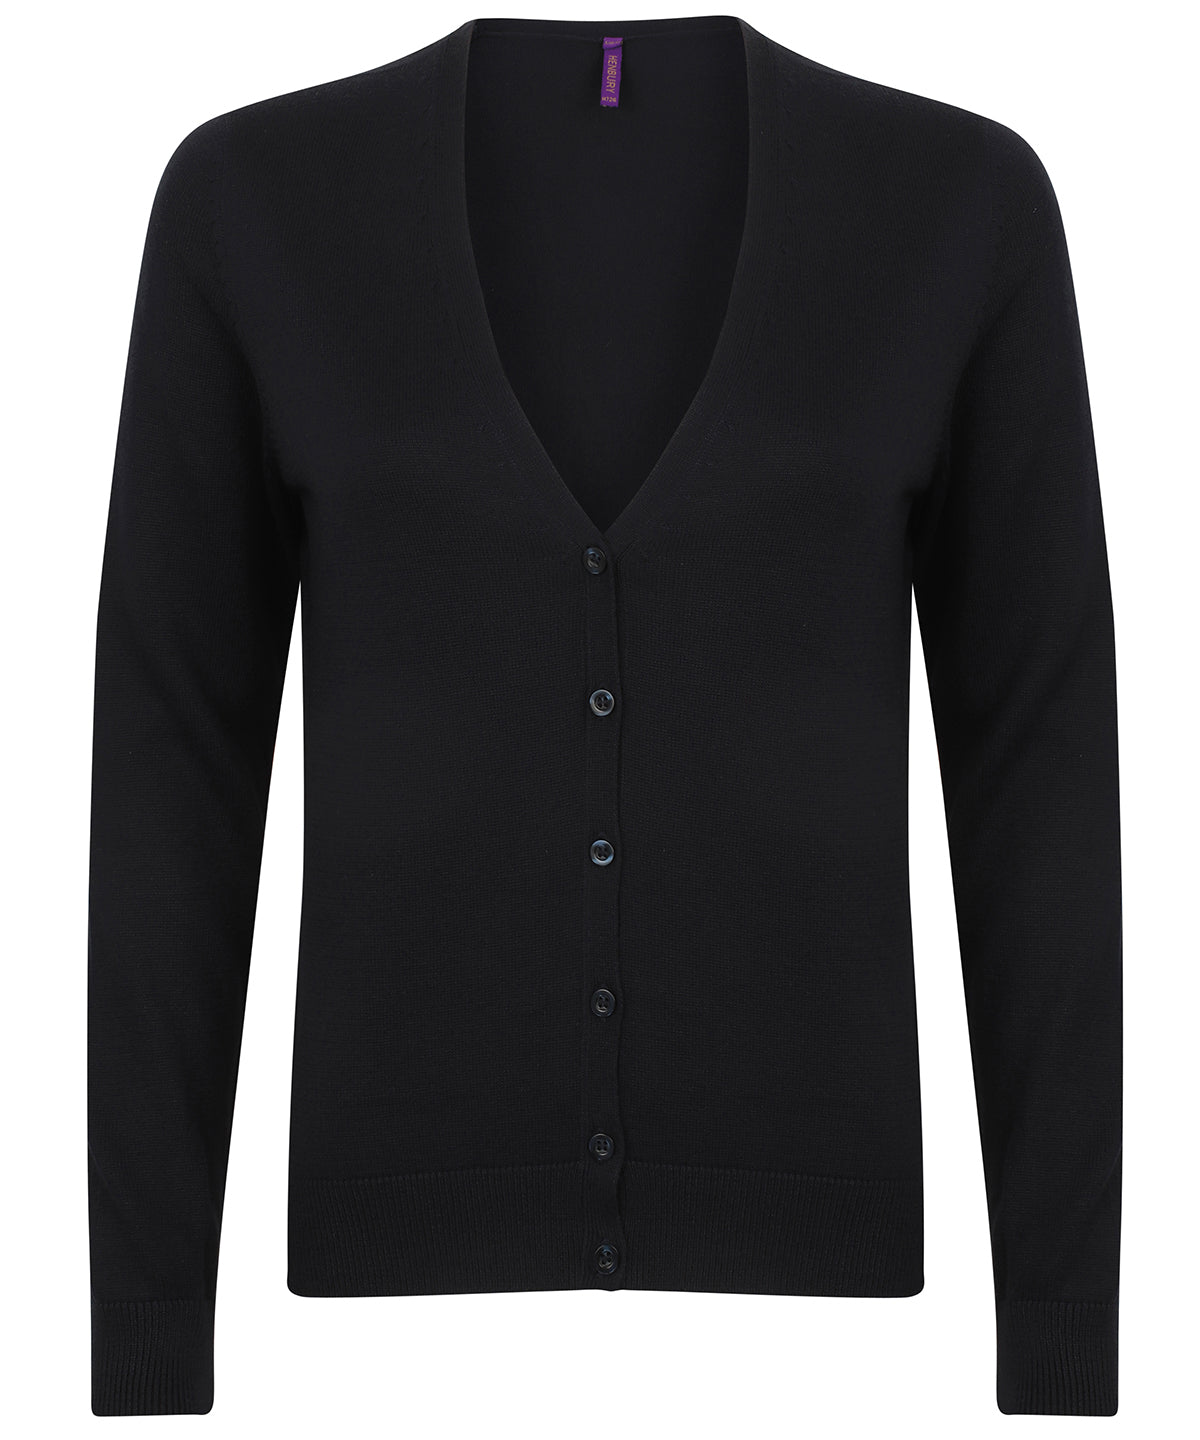 Personalised Cardigans - Black Henbury Women's v-neck cardigan